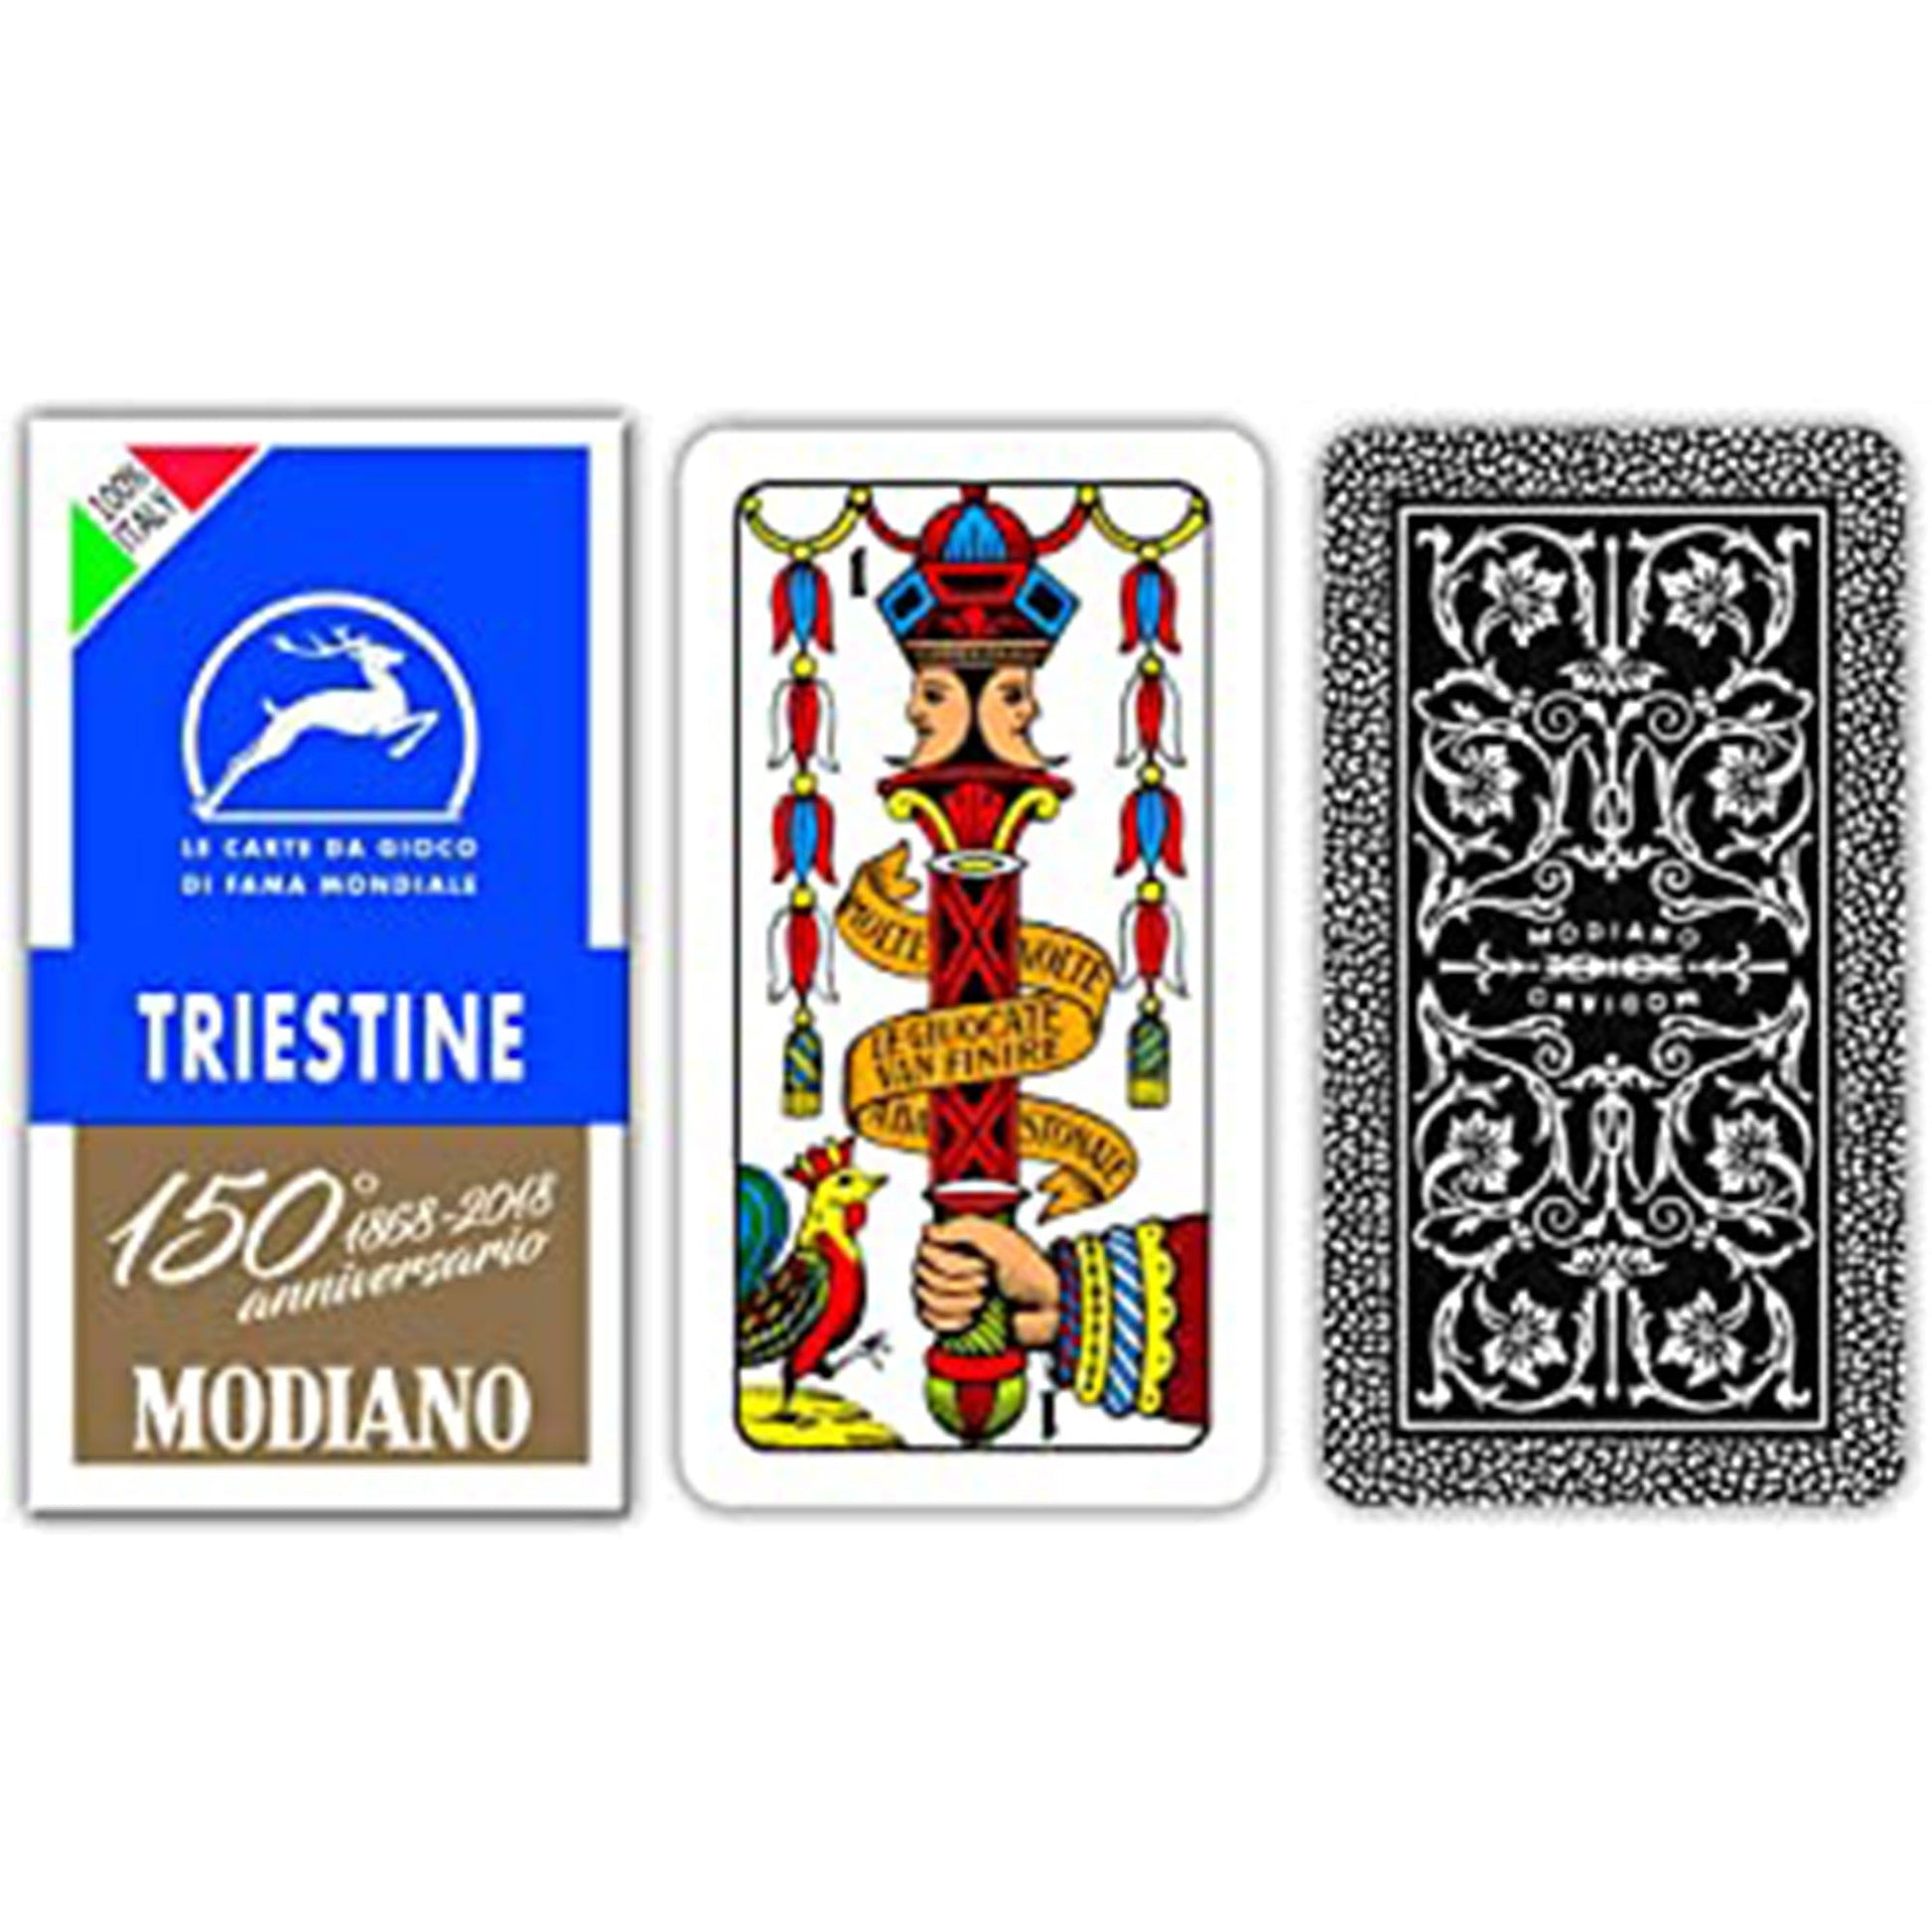 Modiano Triestine Cards